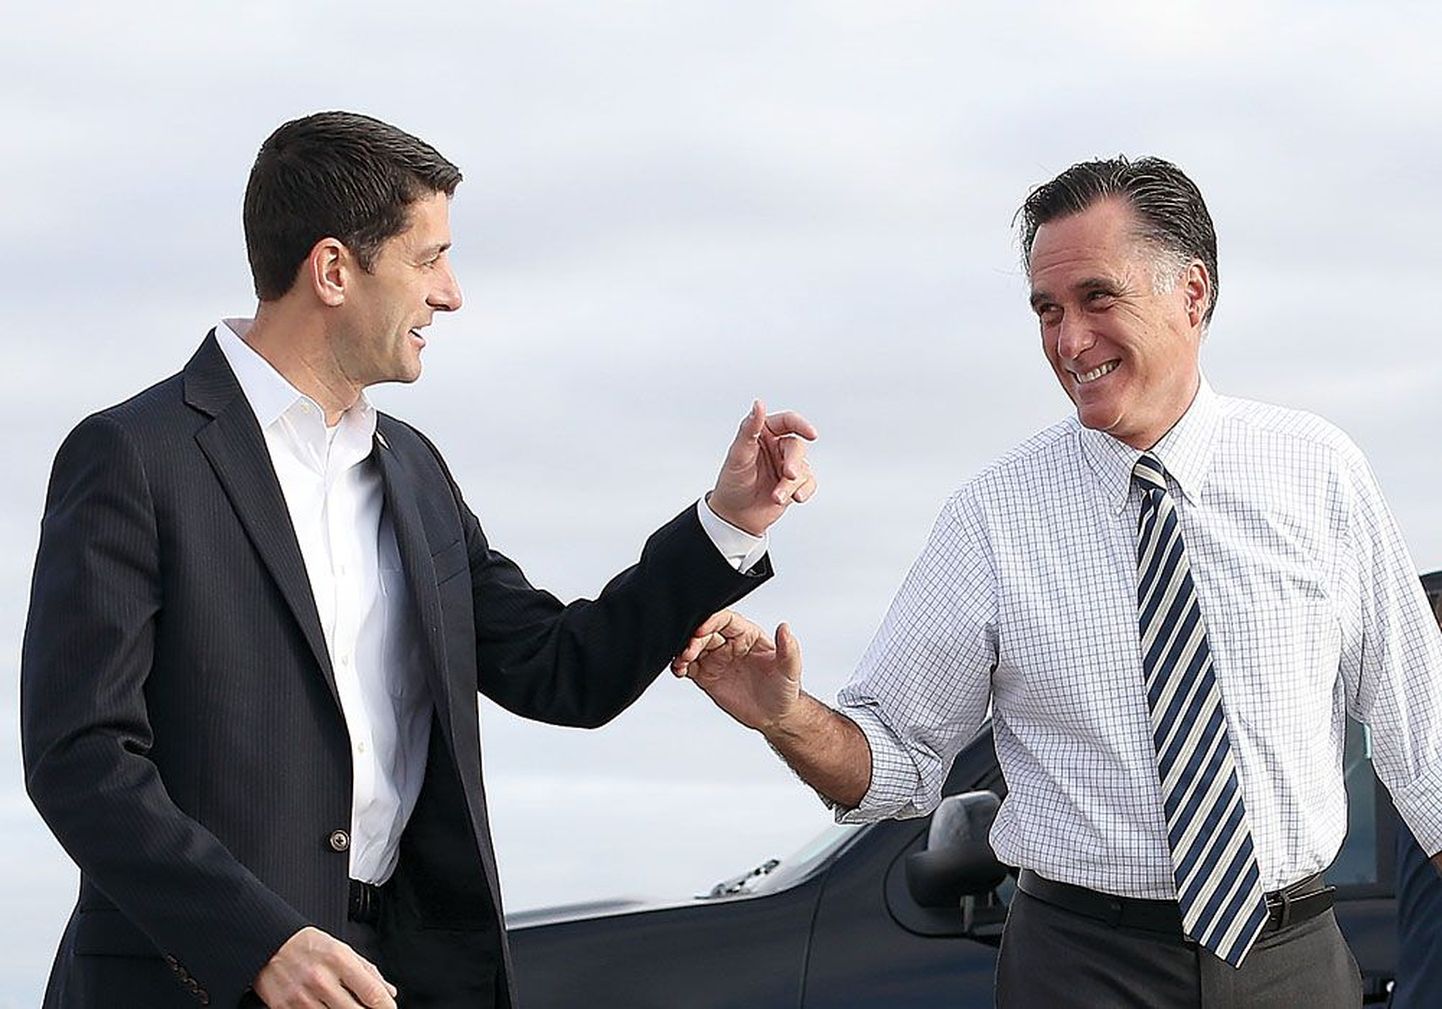 Республиканцы Пол Райан, кандидат на пост вице-президента, и Митт Ромни (справа), кандидат на пост президента, направляются к самолетам, чтобы отправиться на предвыборные мероприятия.